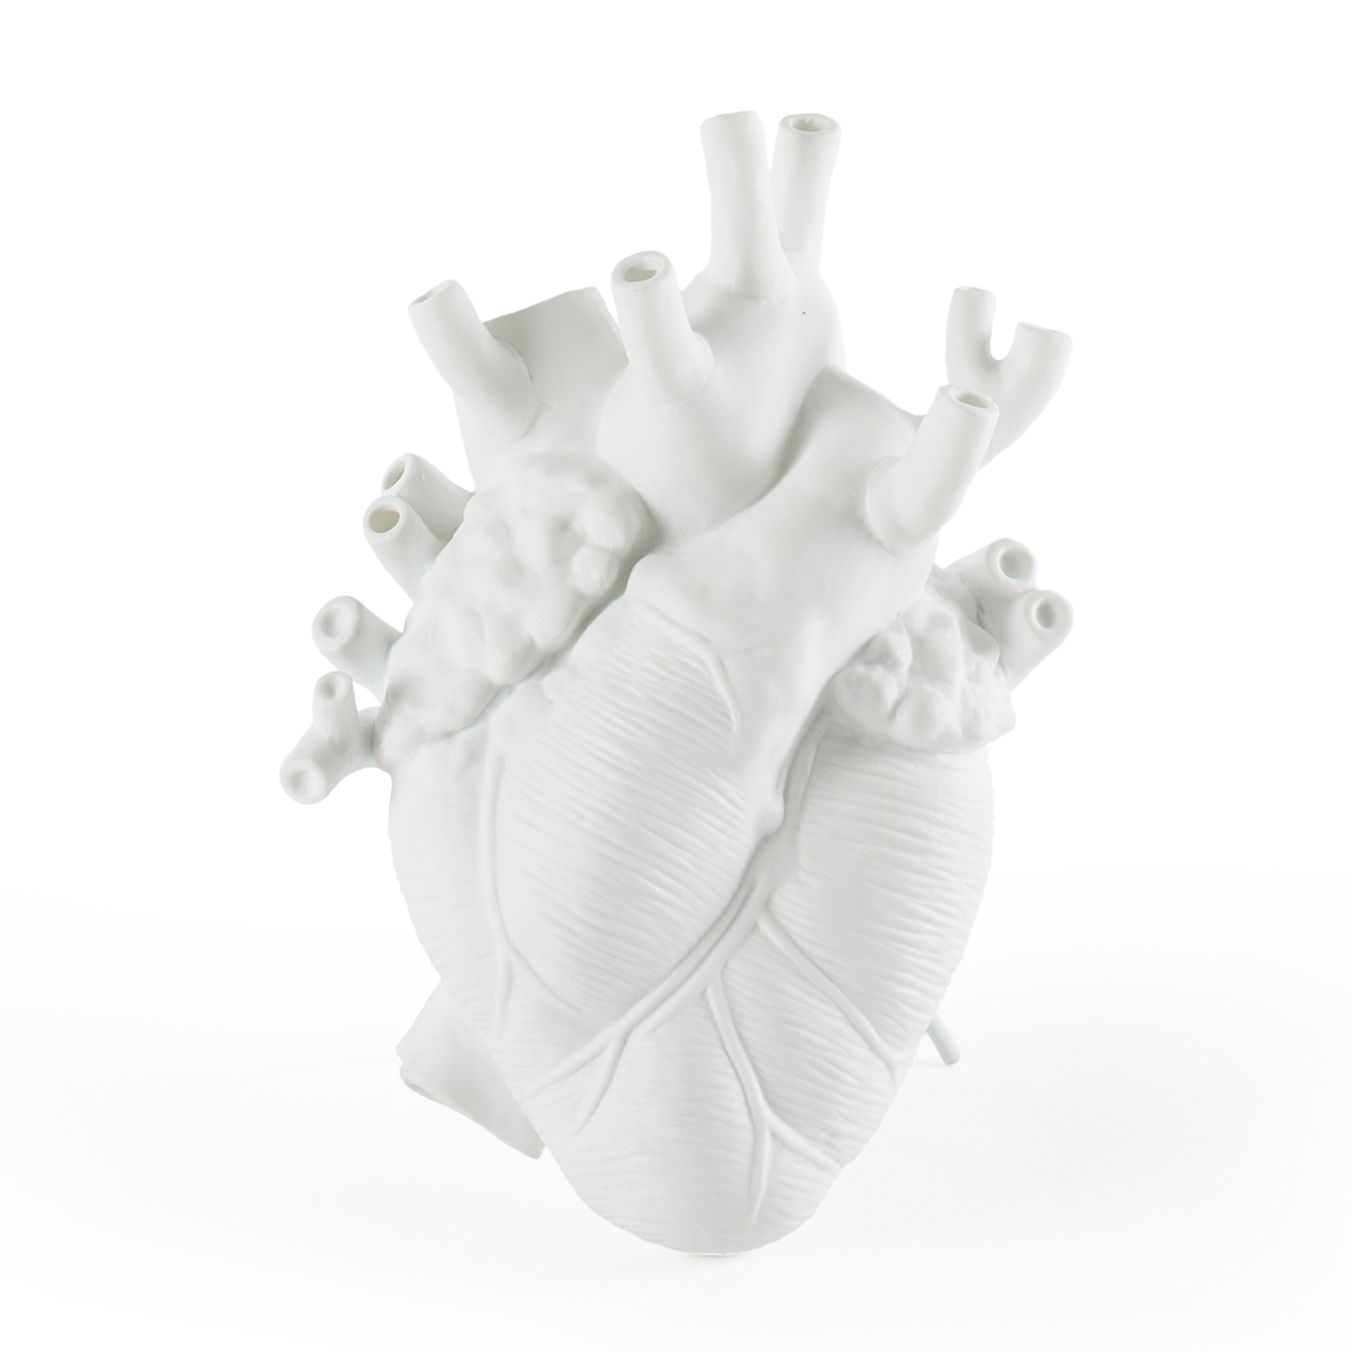 Cyberpunk cuore vaso cuore anatomico vaso di fiori contenitore di